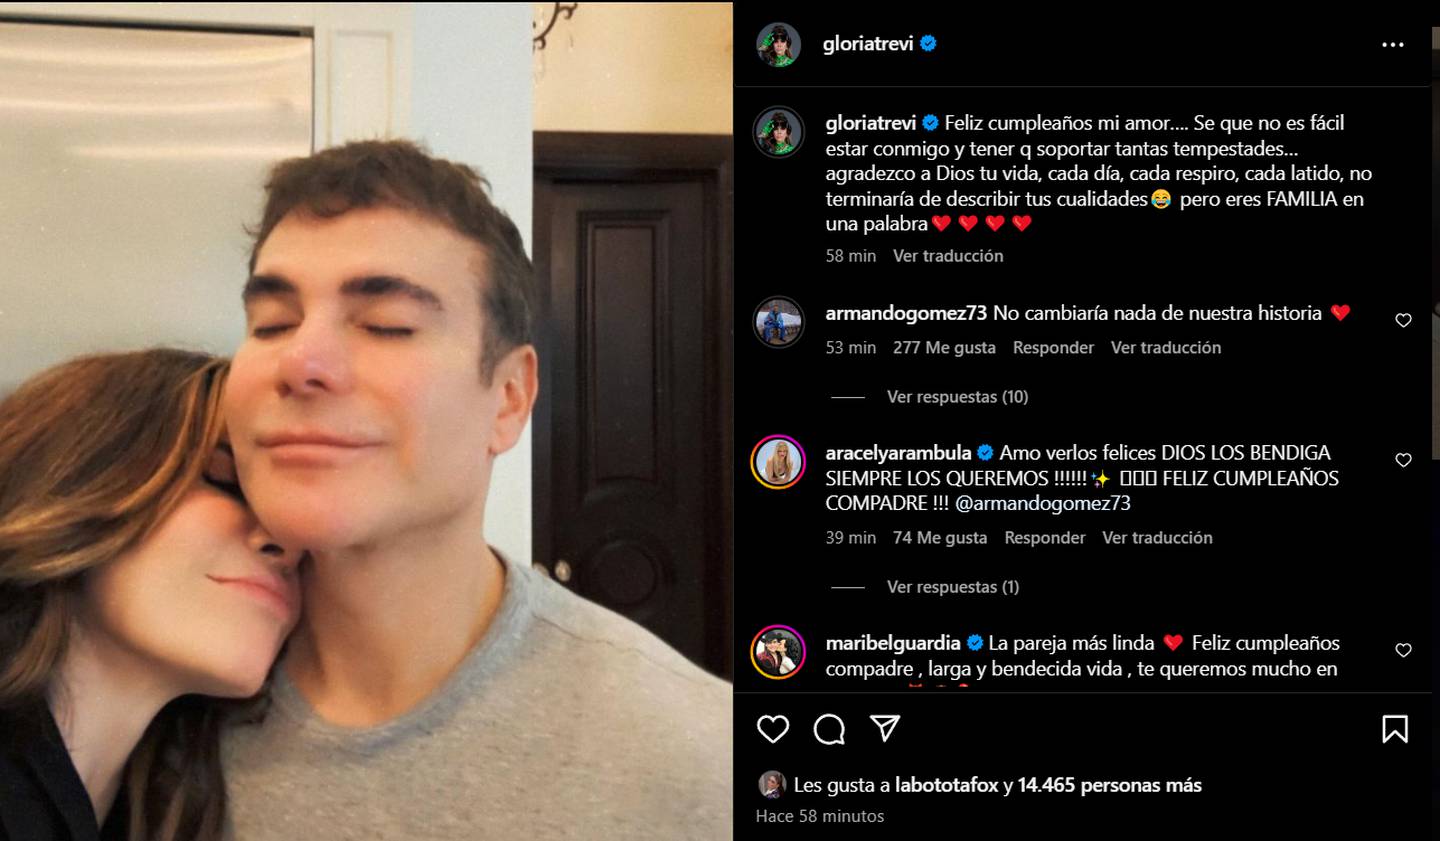 El mensaje de Gloria Trevi en Instagram y la respuesta de Armando Gómez